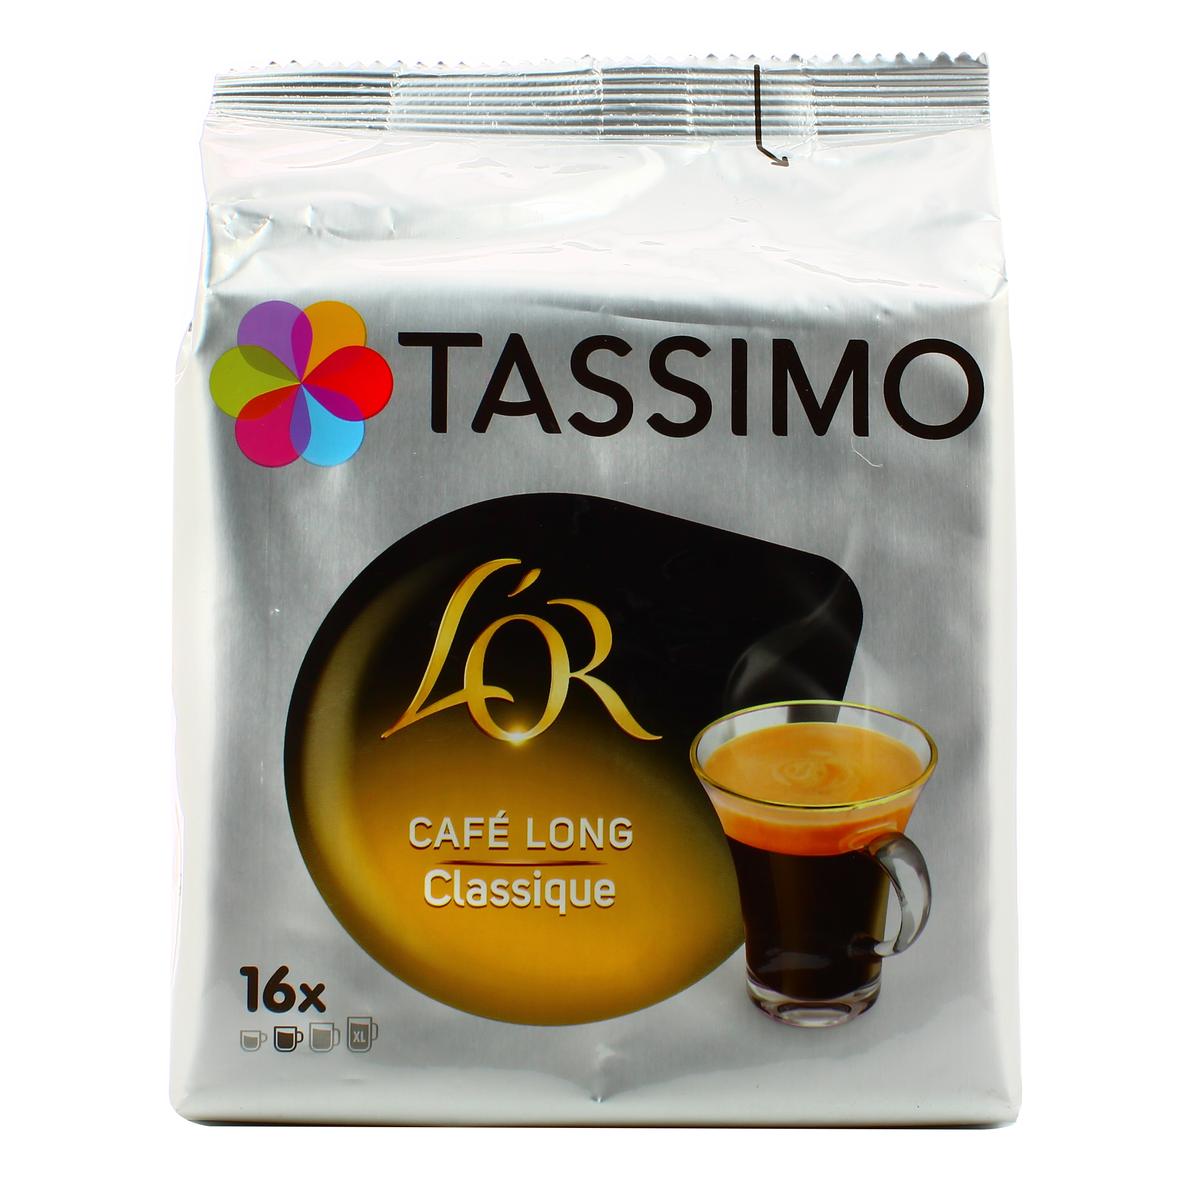 Achat / Vente Promotion Tassimo L'or café long classique, 16 dosettes